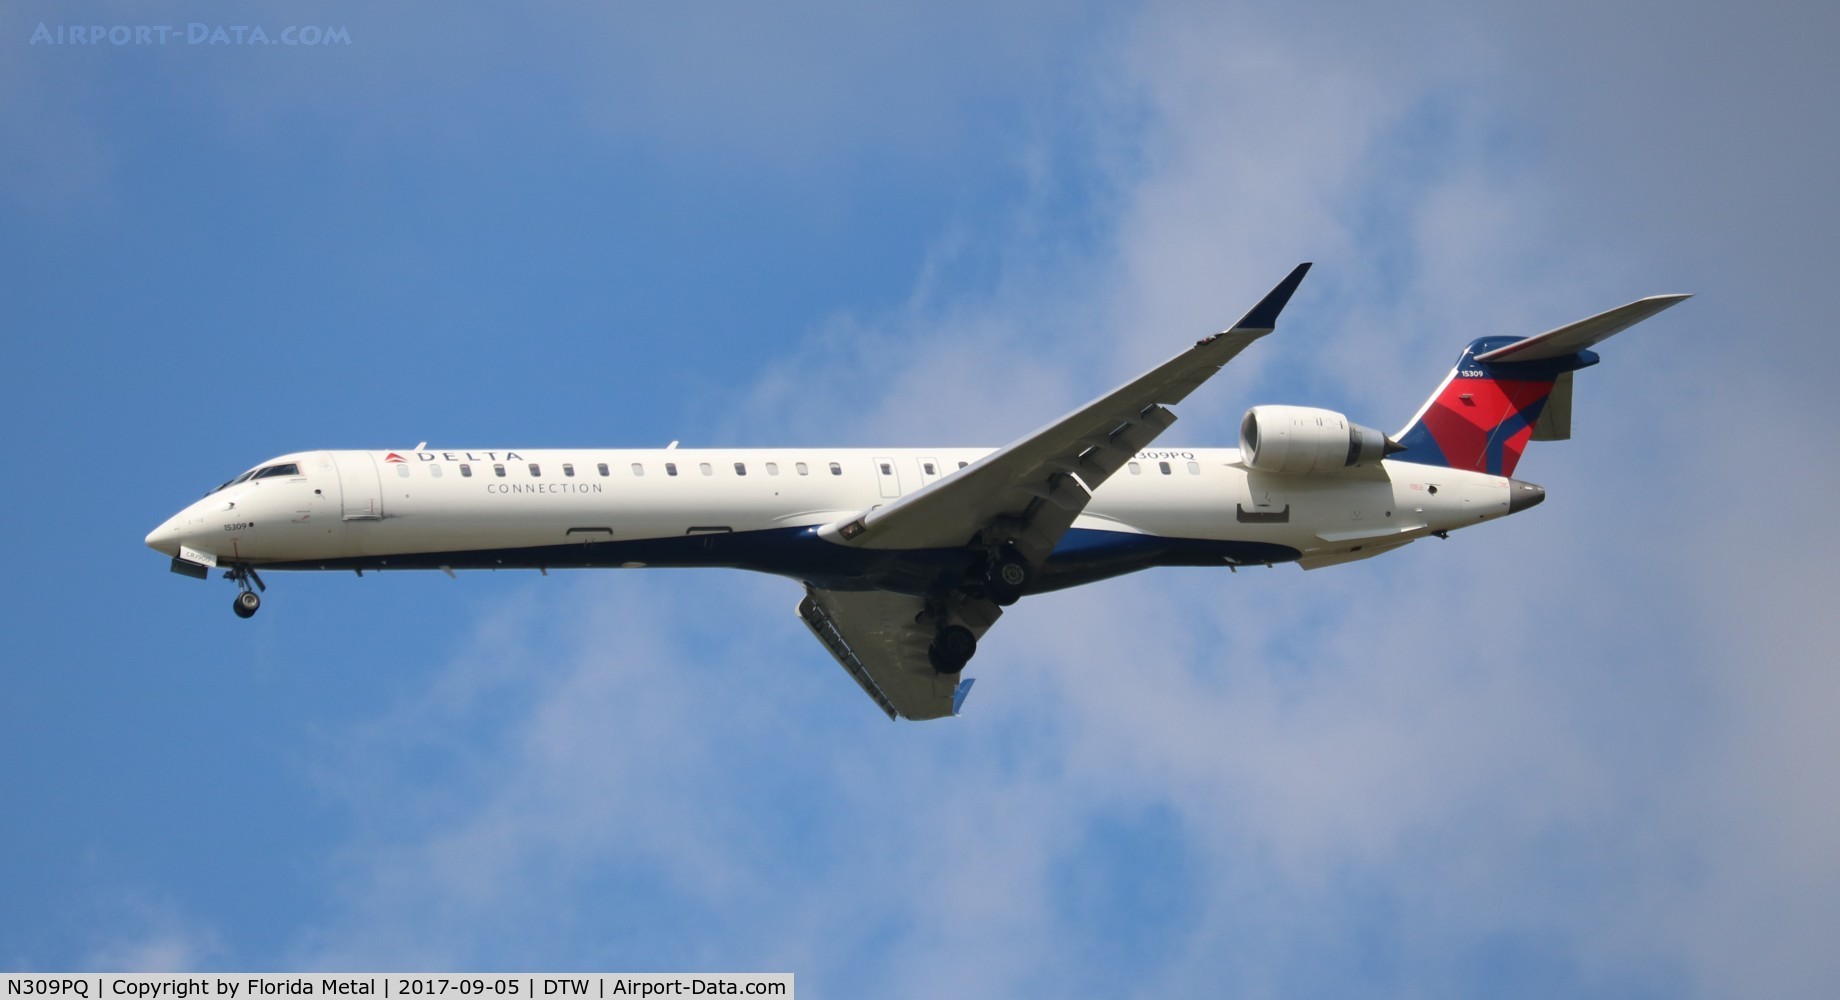 N309PQ, 2014 Bombardier CRJ-900LR (CL-600-2D24) C/N 15309, Delta Connection